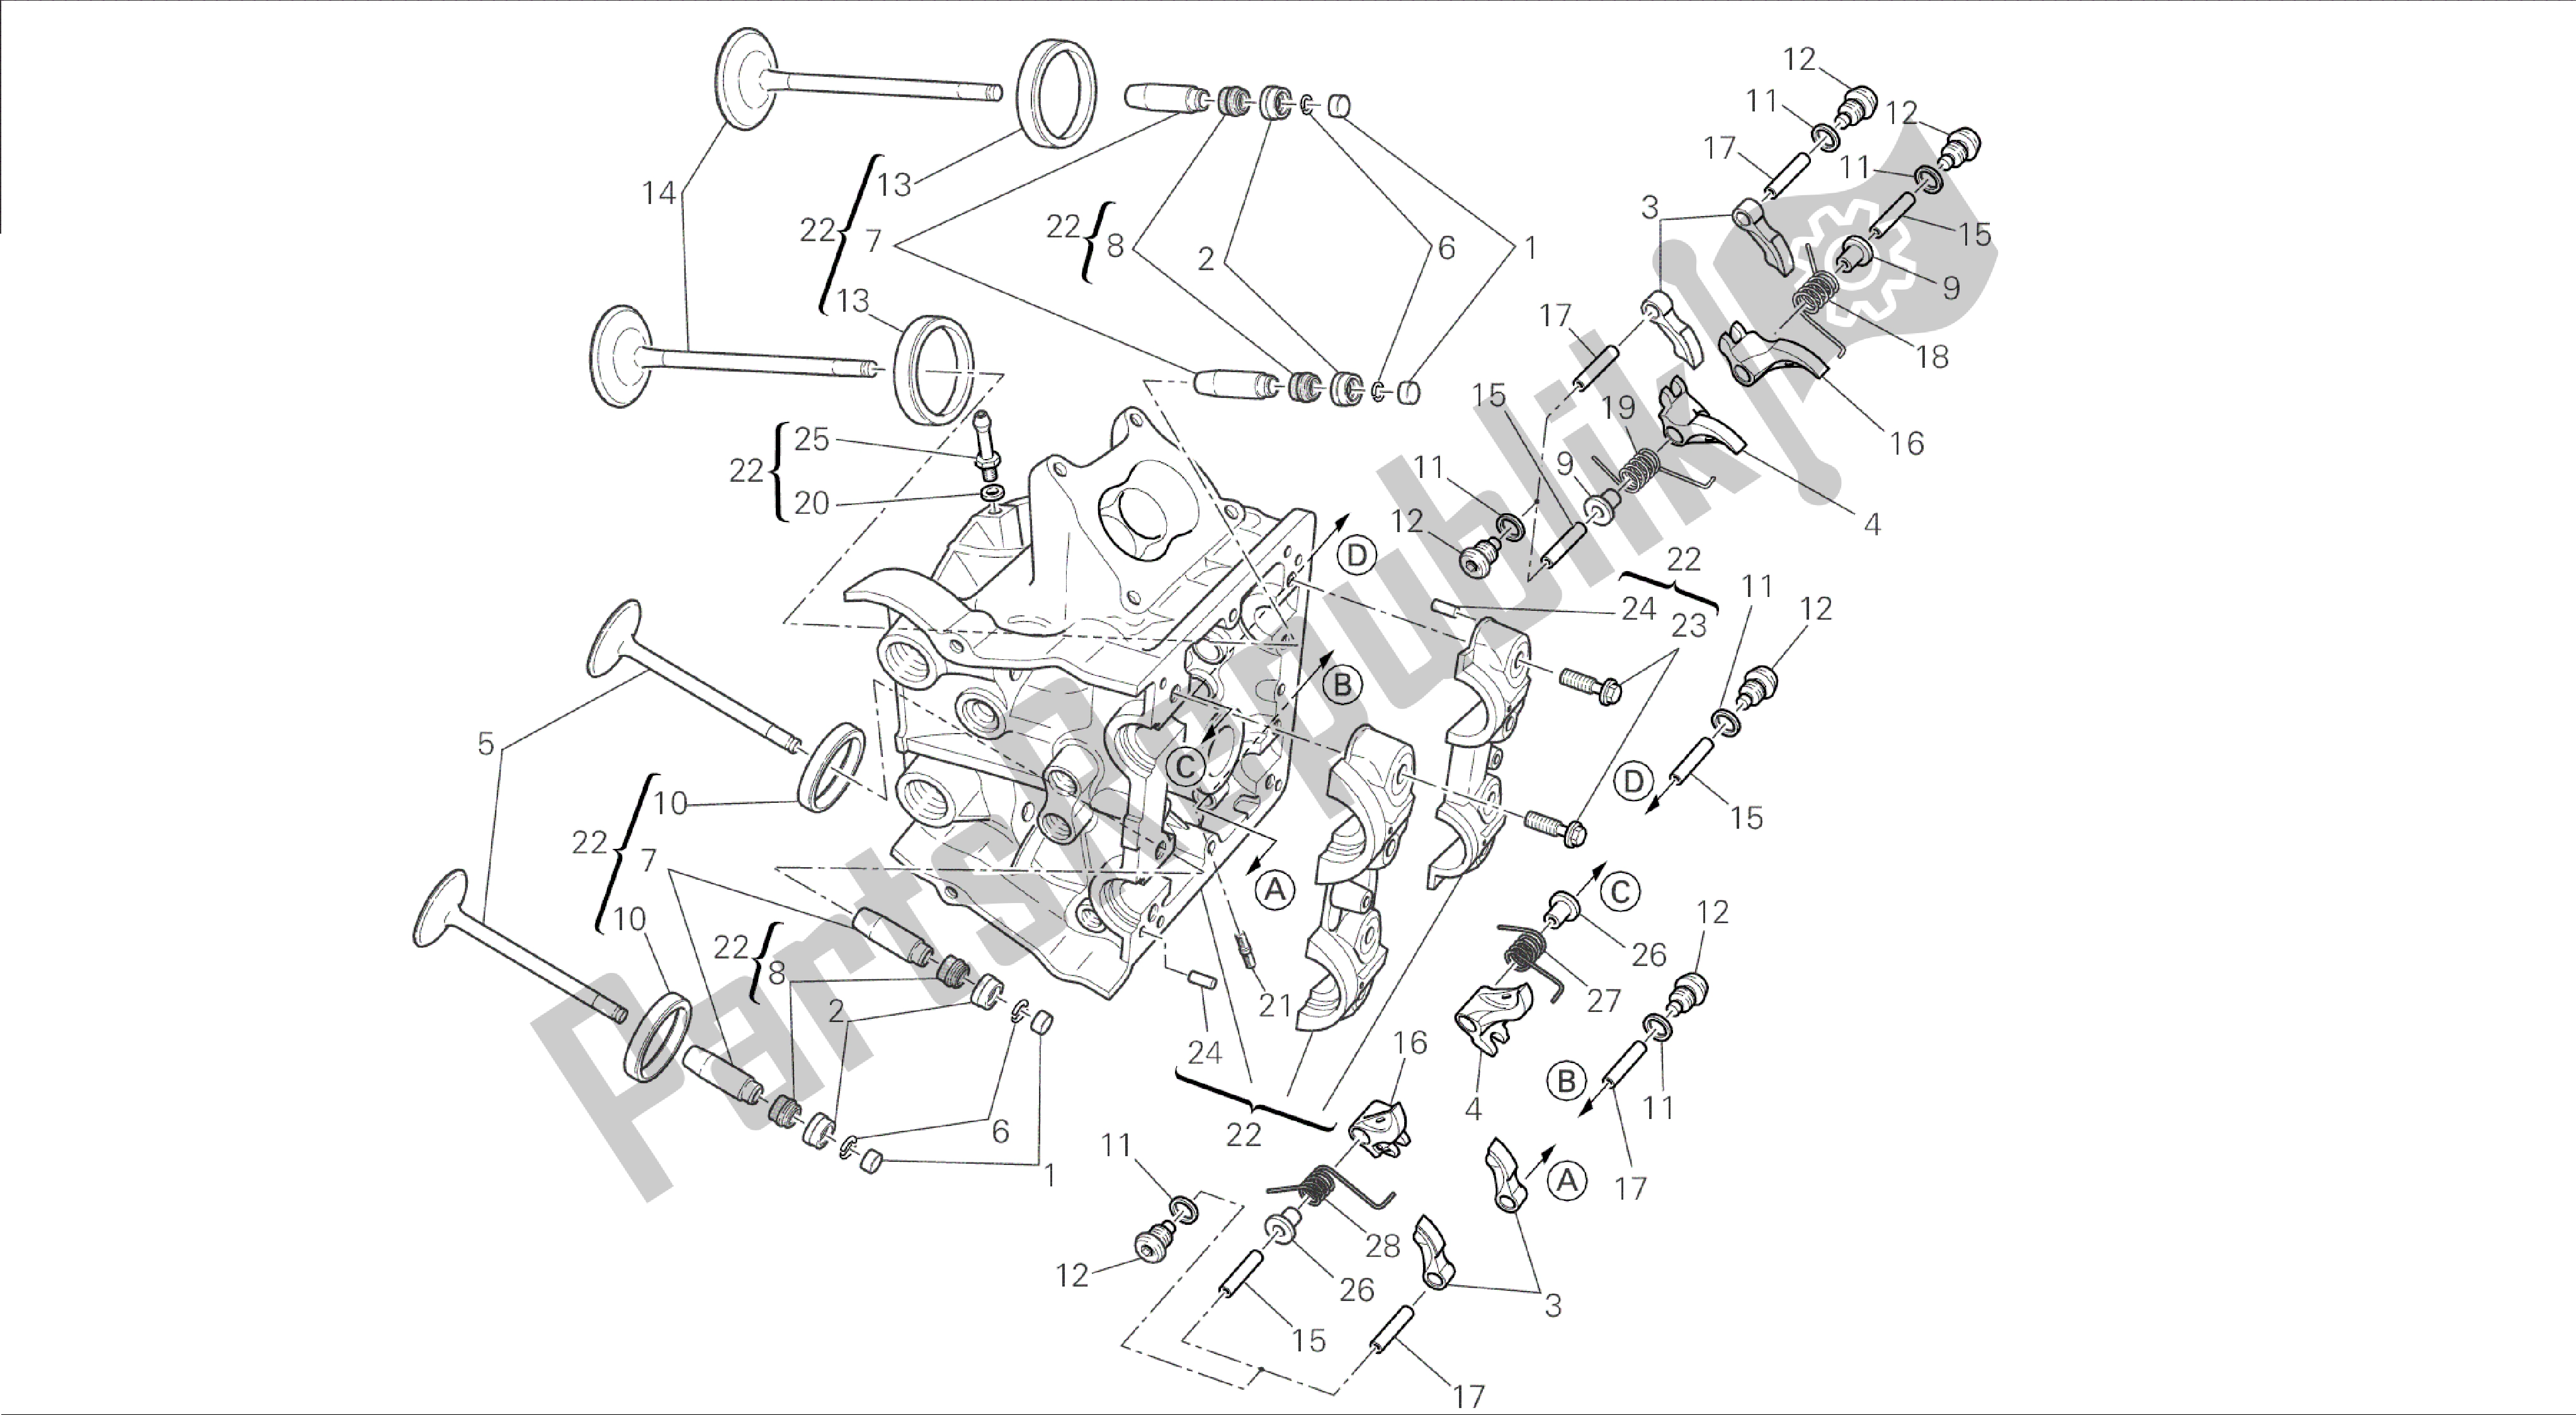 Toutes les pièces pour le Dessin 015 - Groupe Moteur De Culasse Horizontale [mod: Dvl] du Ducati Diavel 1200 2015